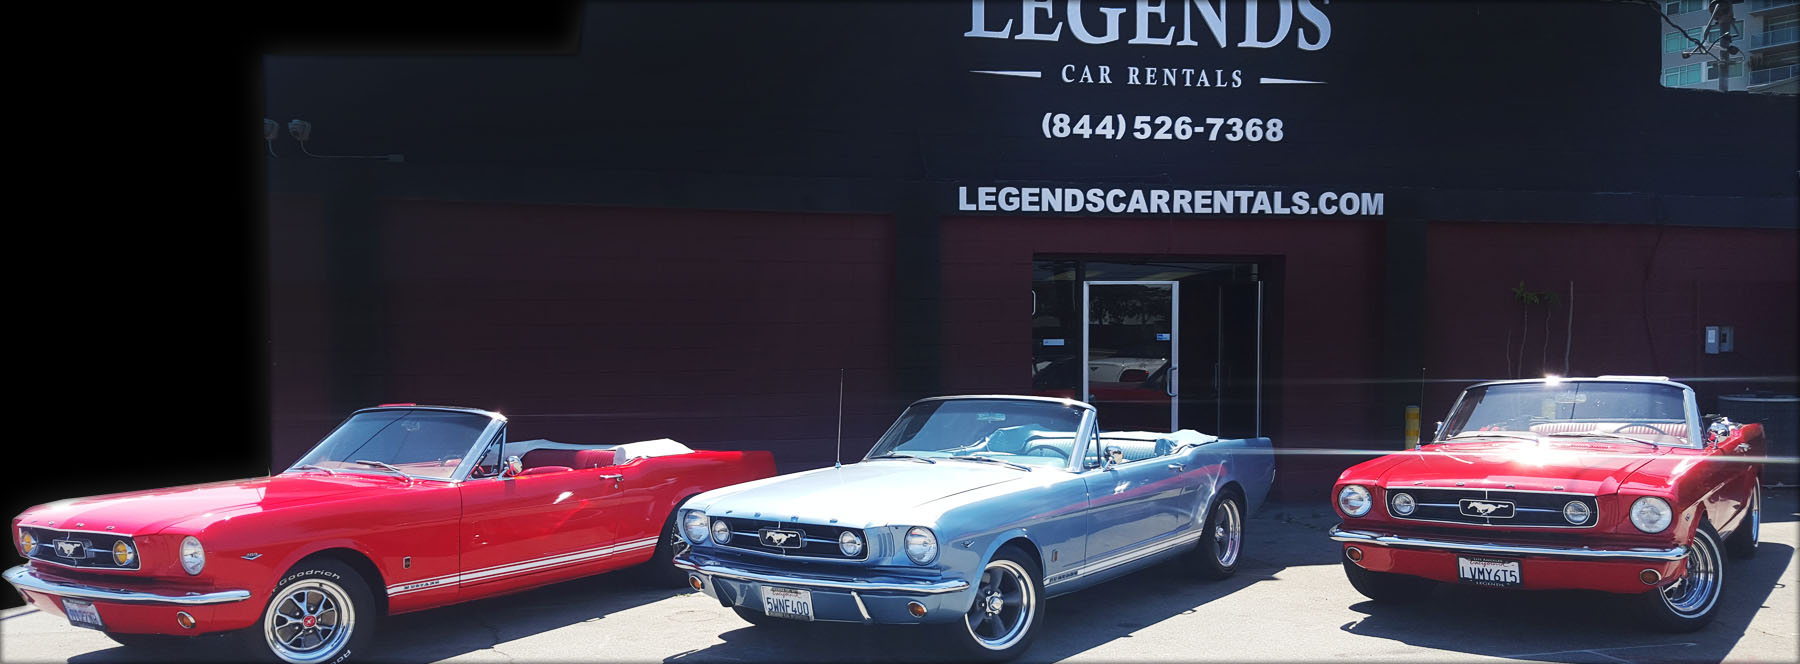 Legends Car Rentals